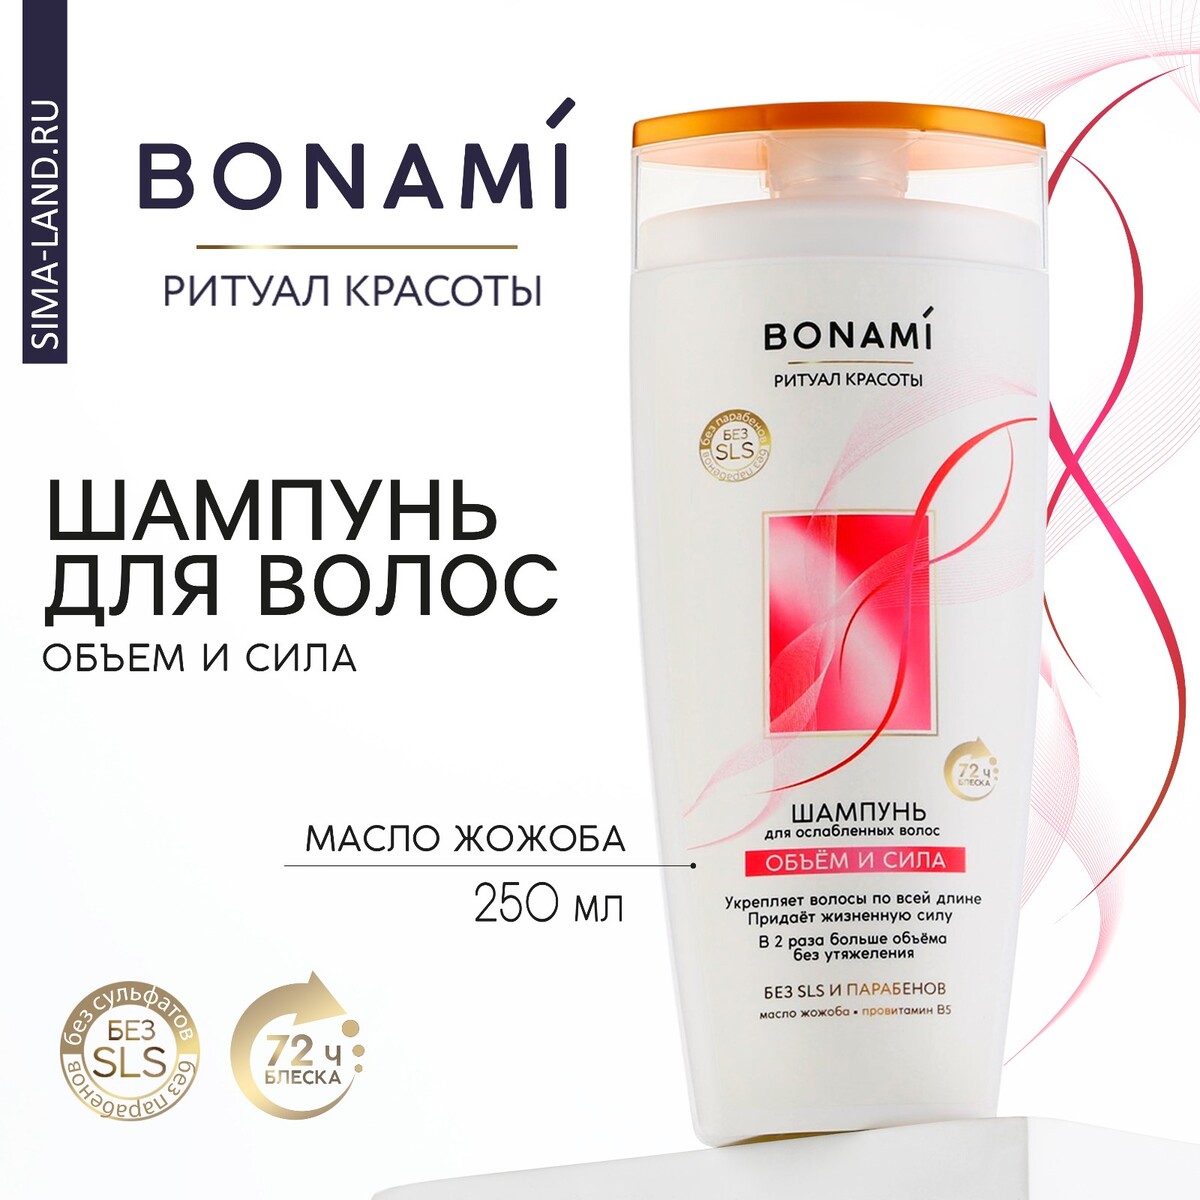 Шампунь для волос с маслом жожоба и провитамином в5, объем и сила, 250 мл,bonami